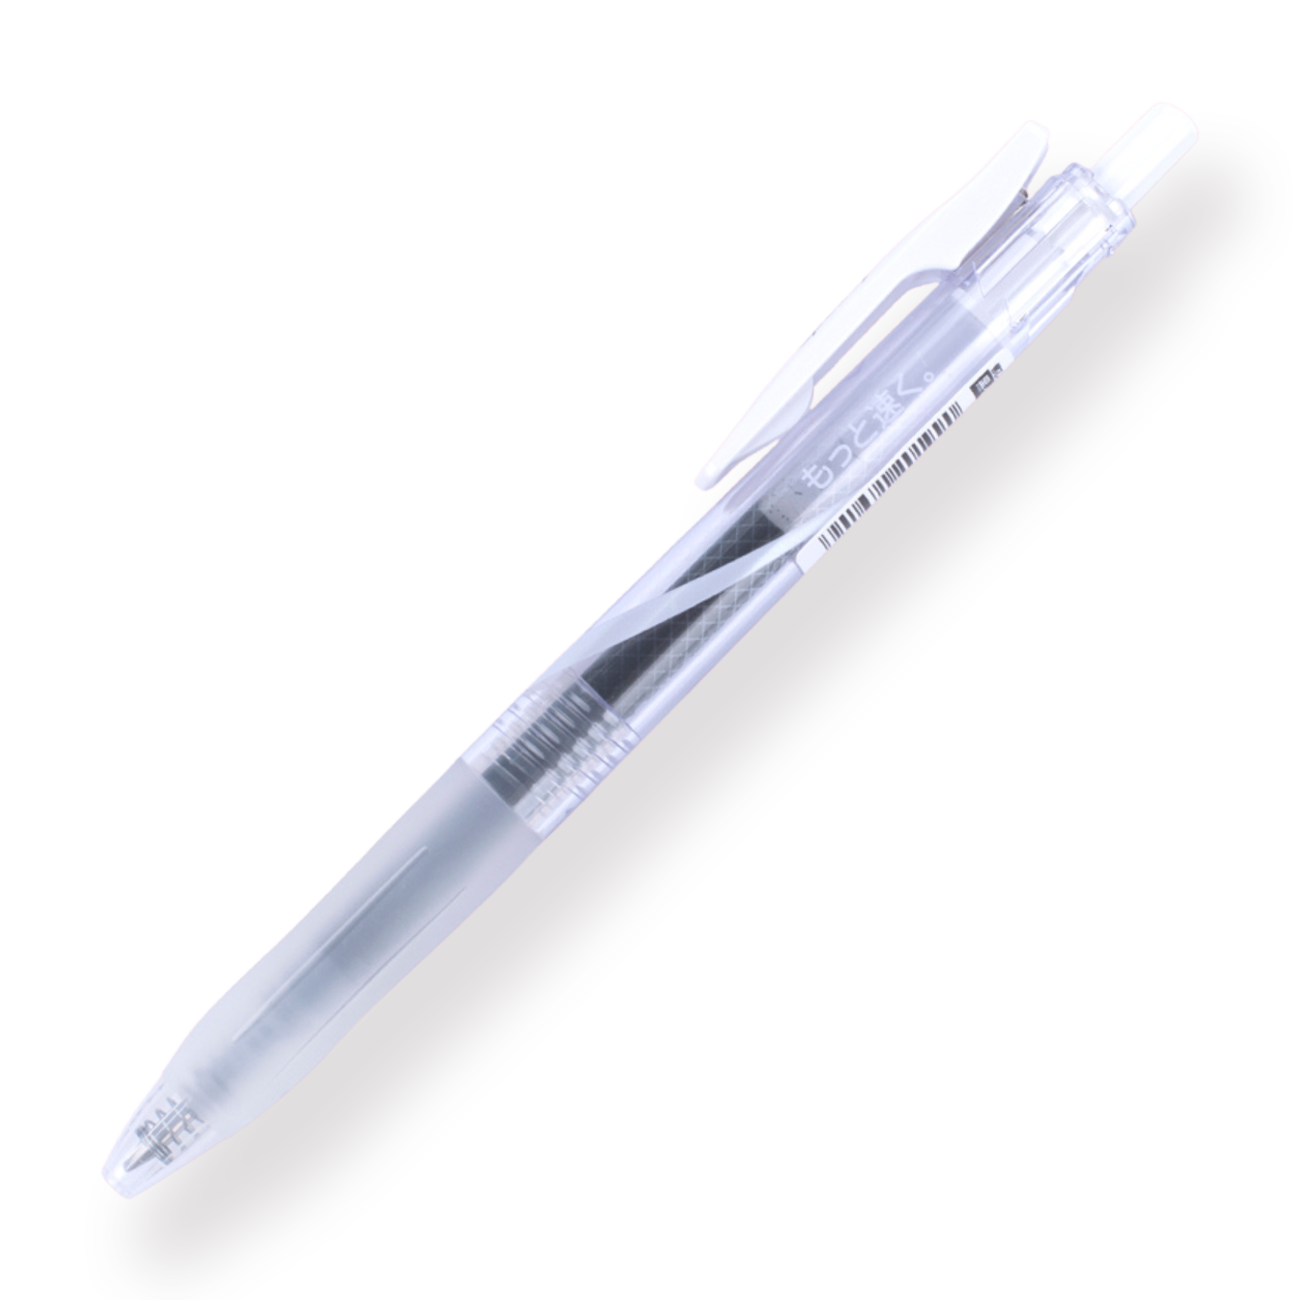 Zebra Sarasa Speedy Gel Pen 0.5 mm - White - Stationery Pal